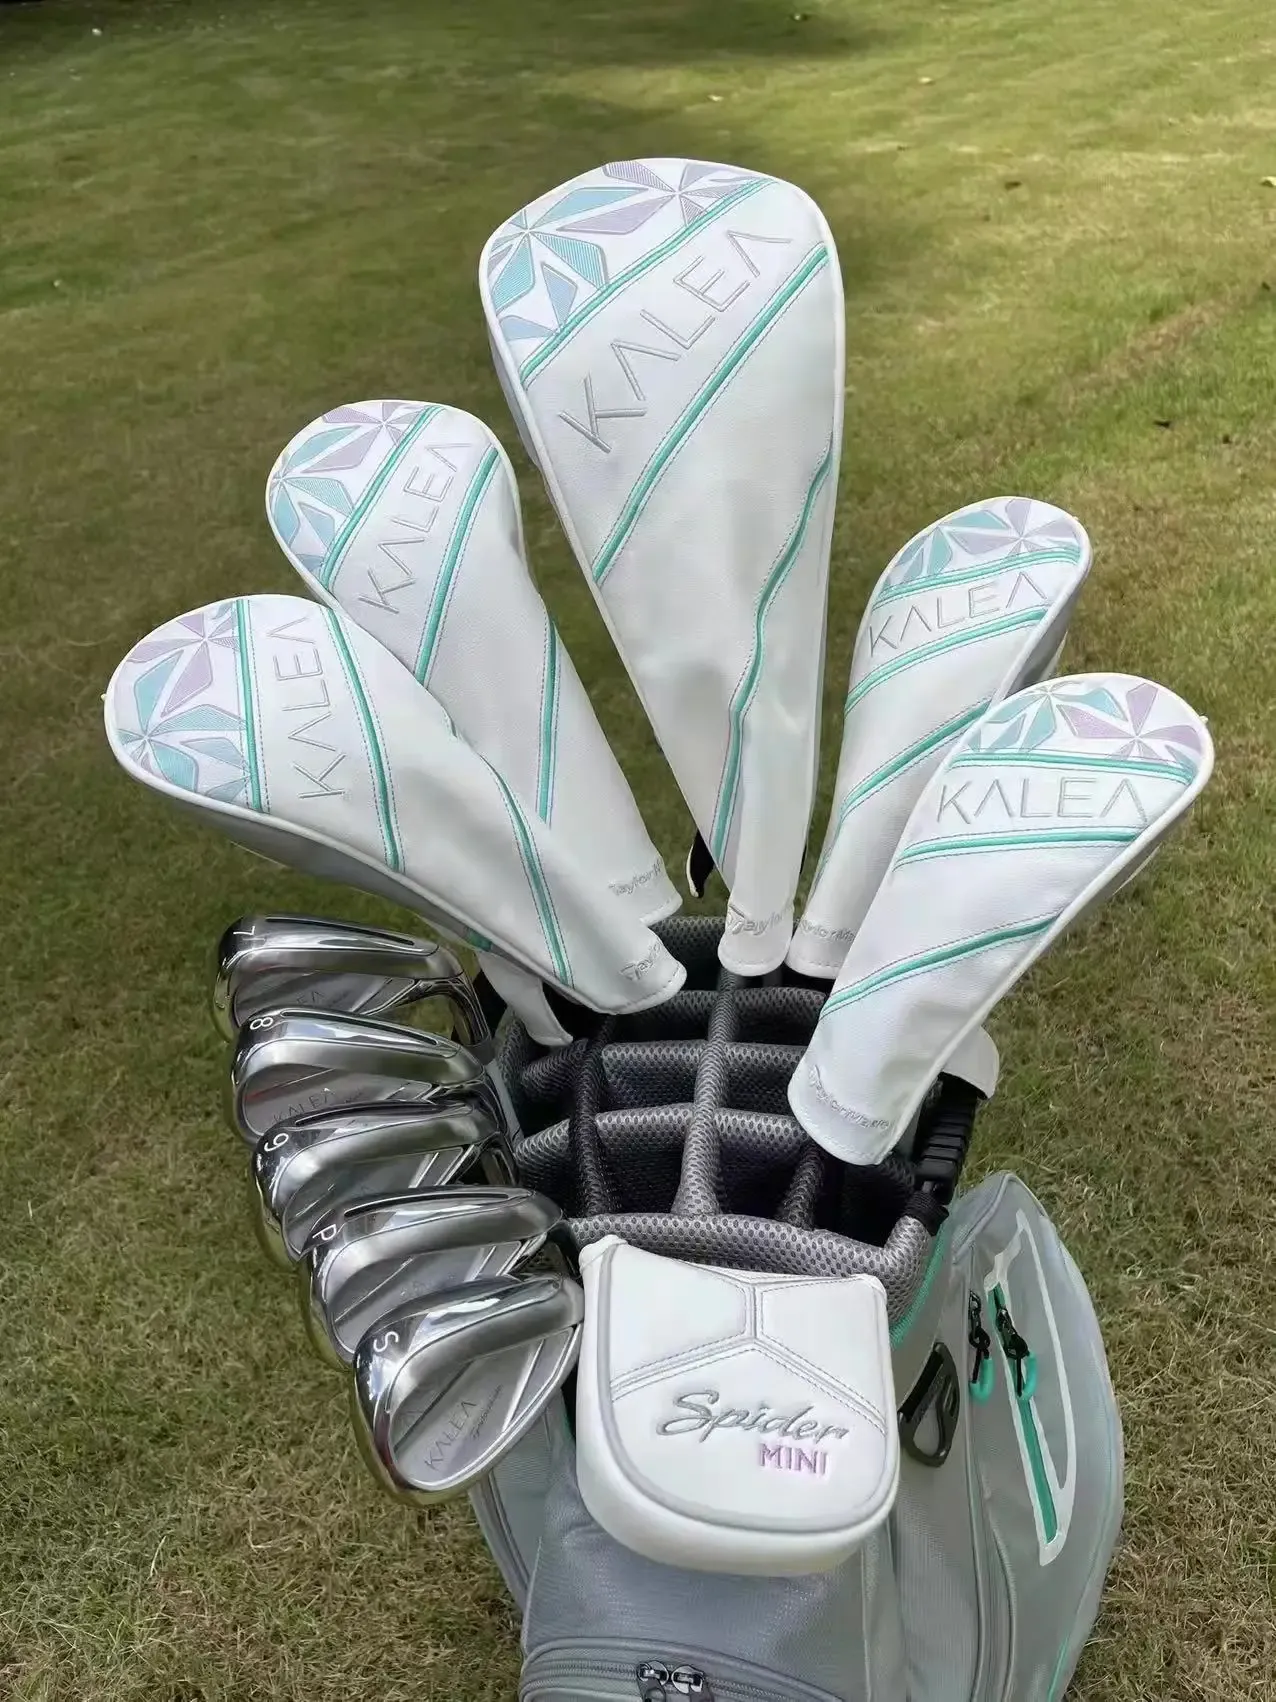 Клубы Женские гольф -клубы установили Kalea Golf Club Golf Complete Set Driver+ Woods+ UT+ Cover Head (без сумки)